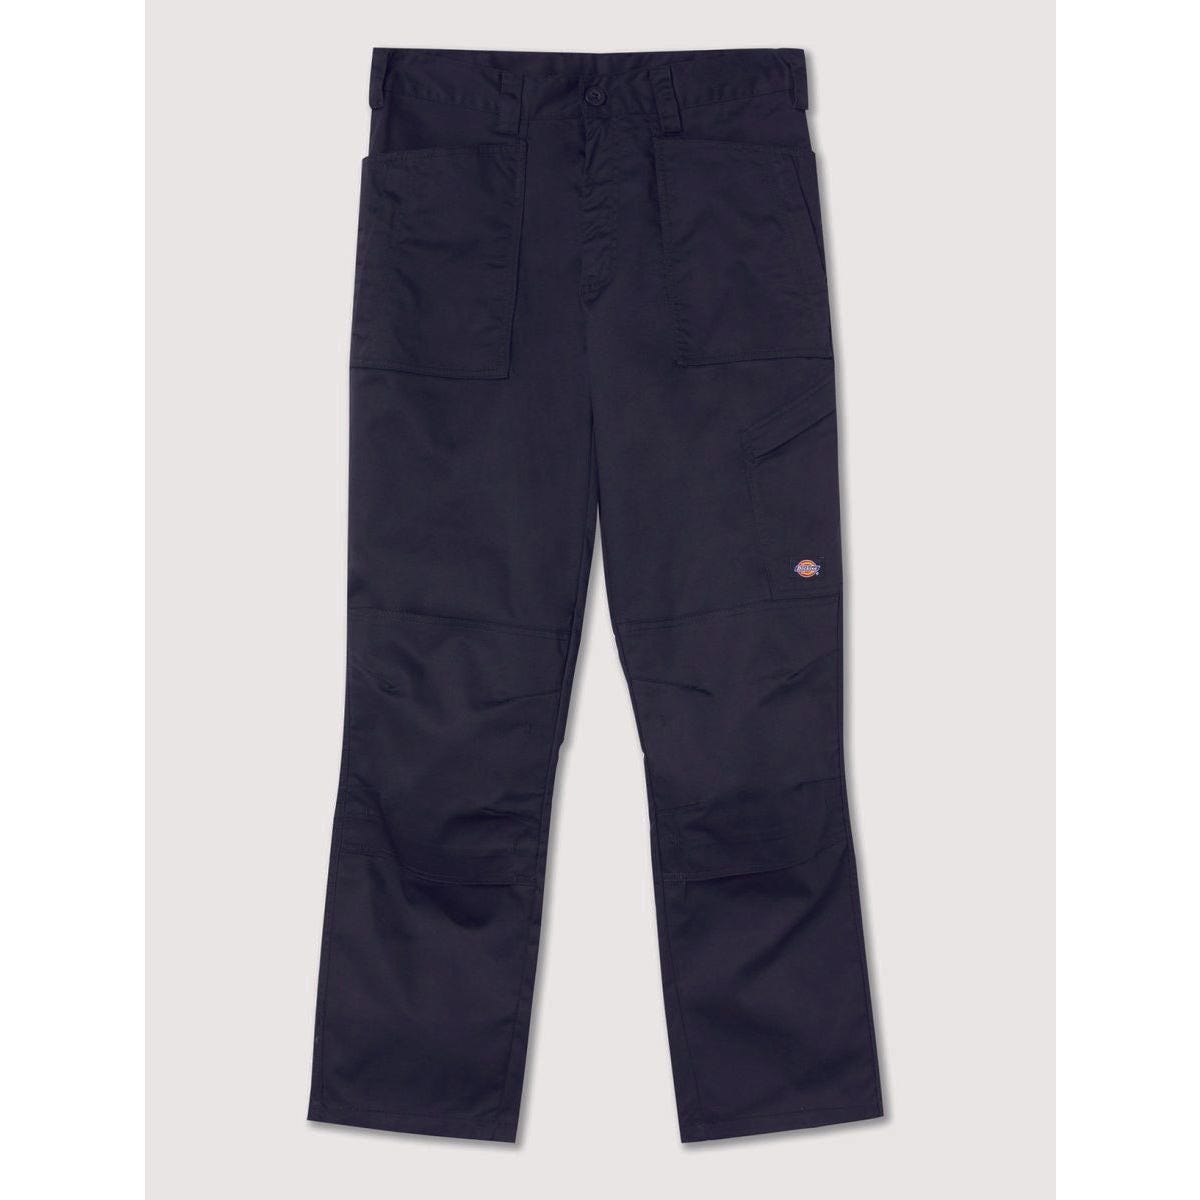 Pantalon de travail Action Flex gris - Dickies - Taille 38 7